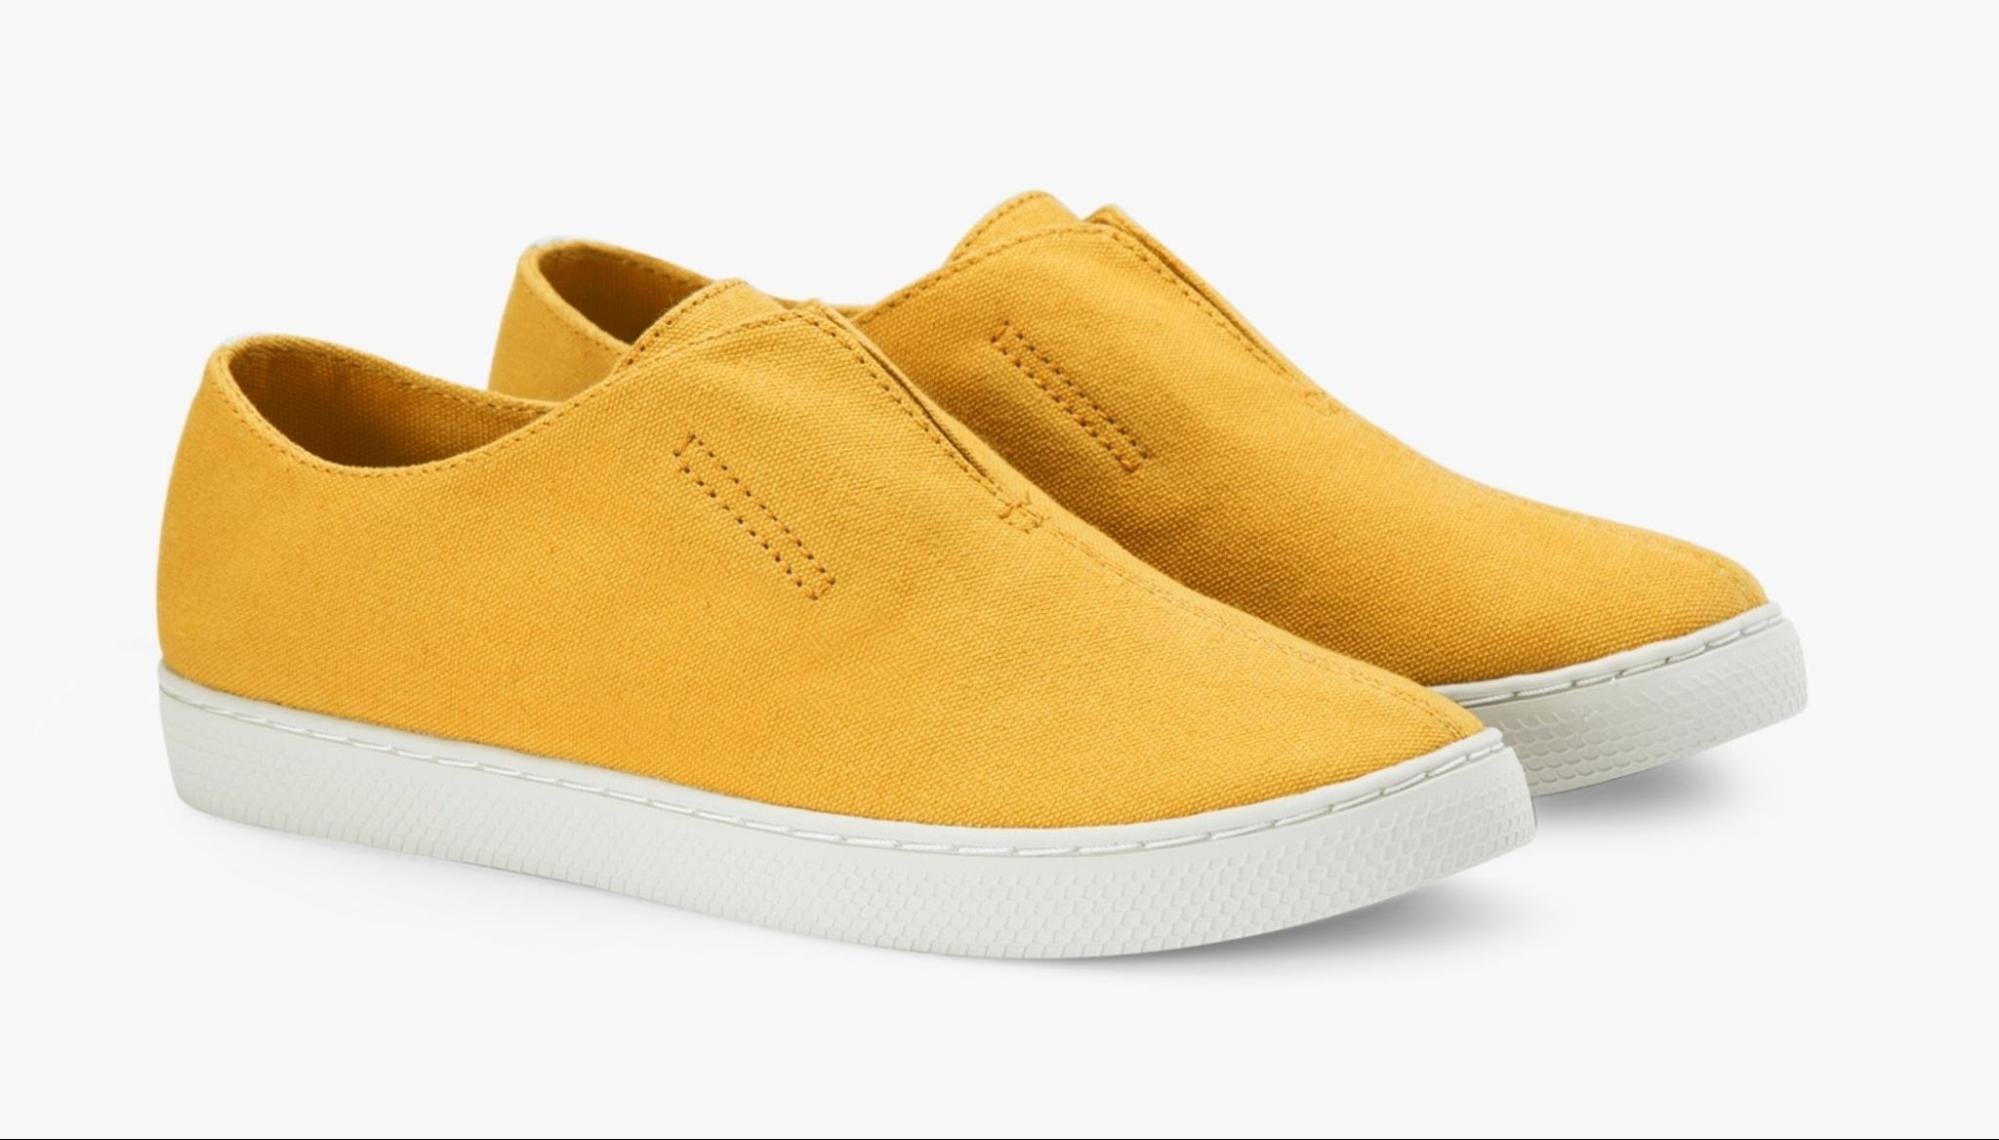 Đôi giày MỘT dòng vải Đời-thường màu vàng nghệ với giá 720,000 VNĐ